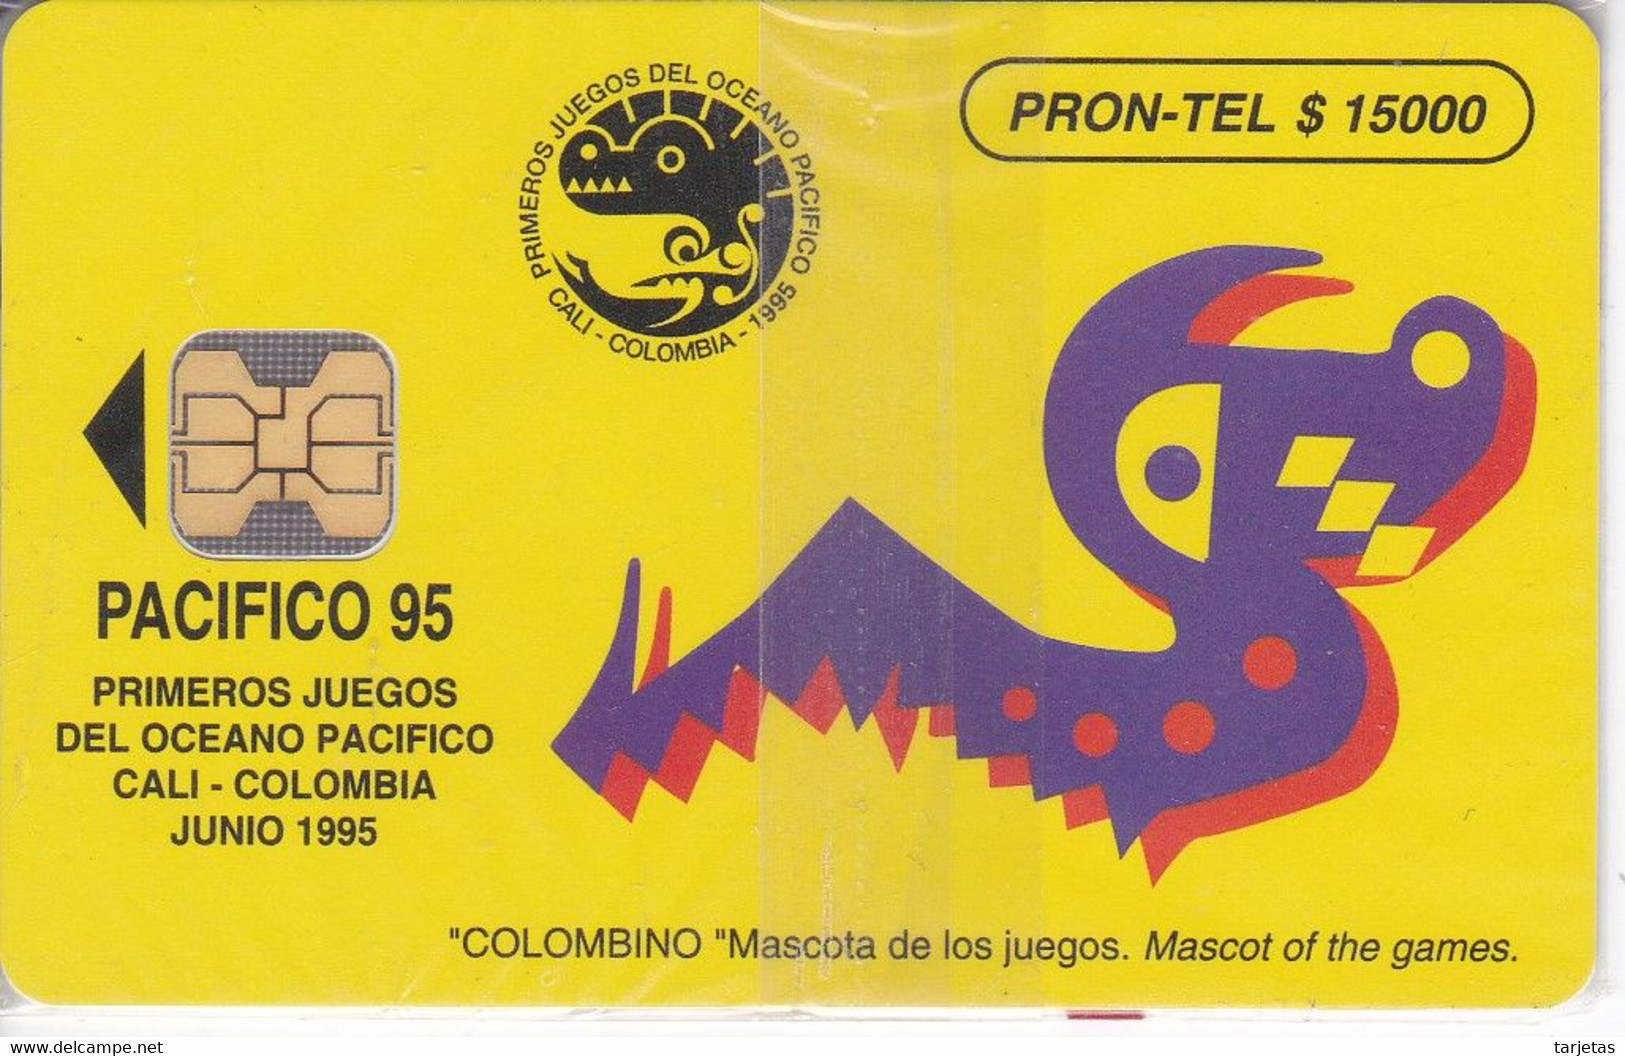 TARJETA DE COLOMBIA DE PRONTEL $15000 CALI PACIFICO 95 TIRADA 10000 NUEVA EN BLISTER - Colombia